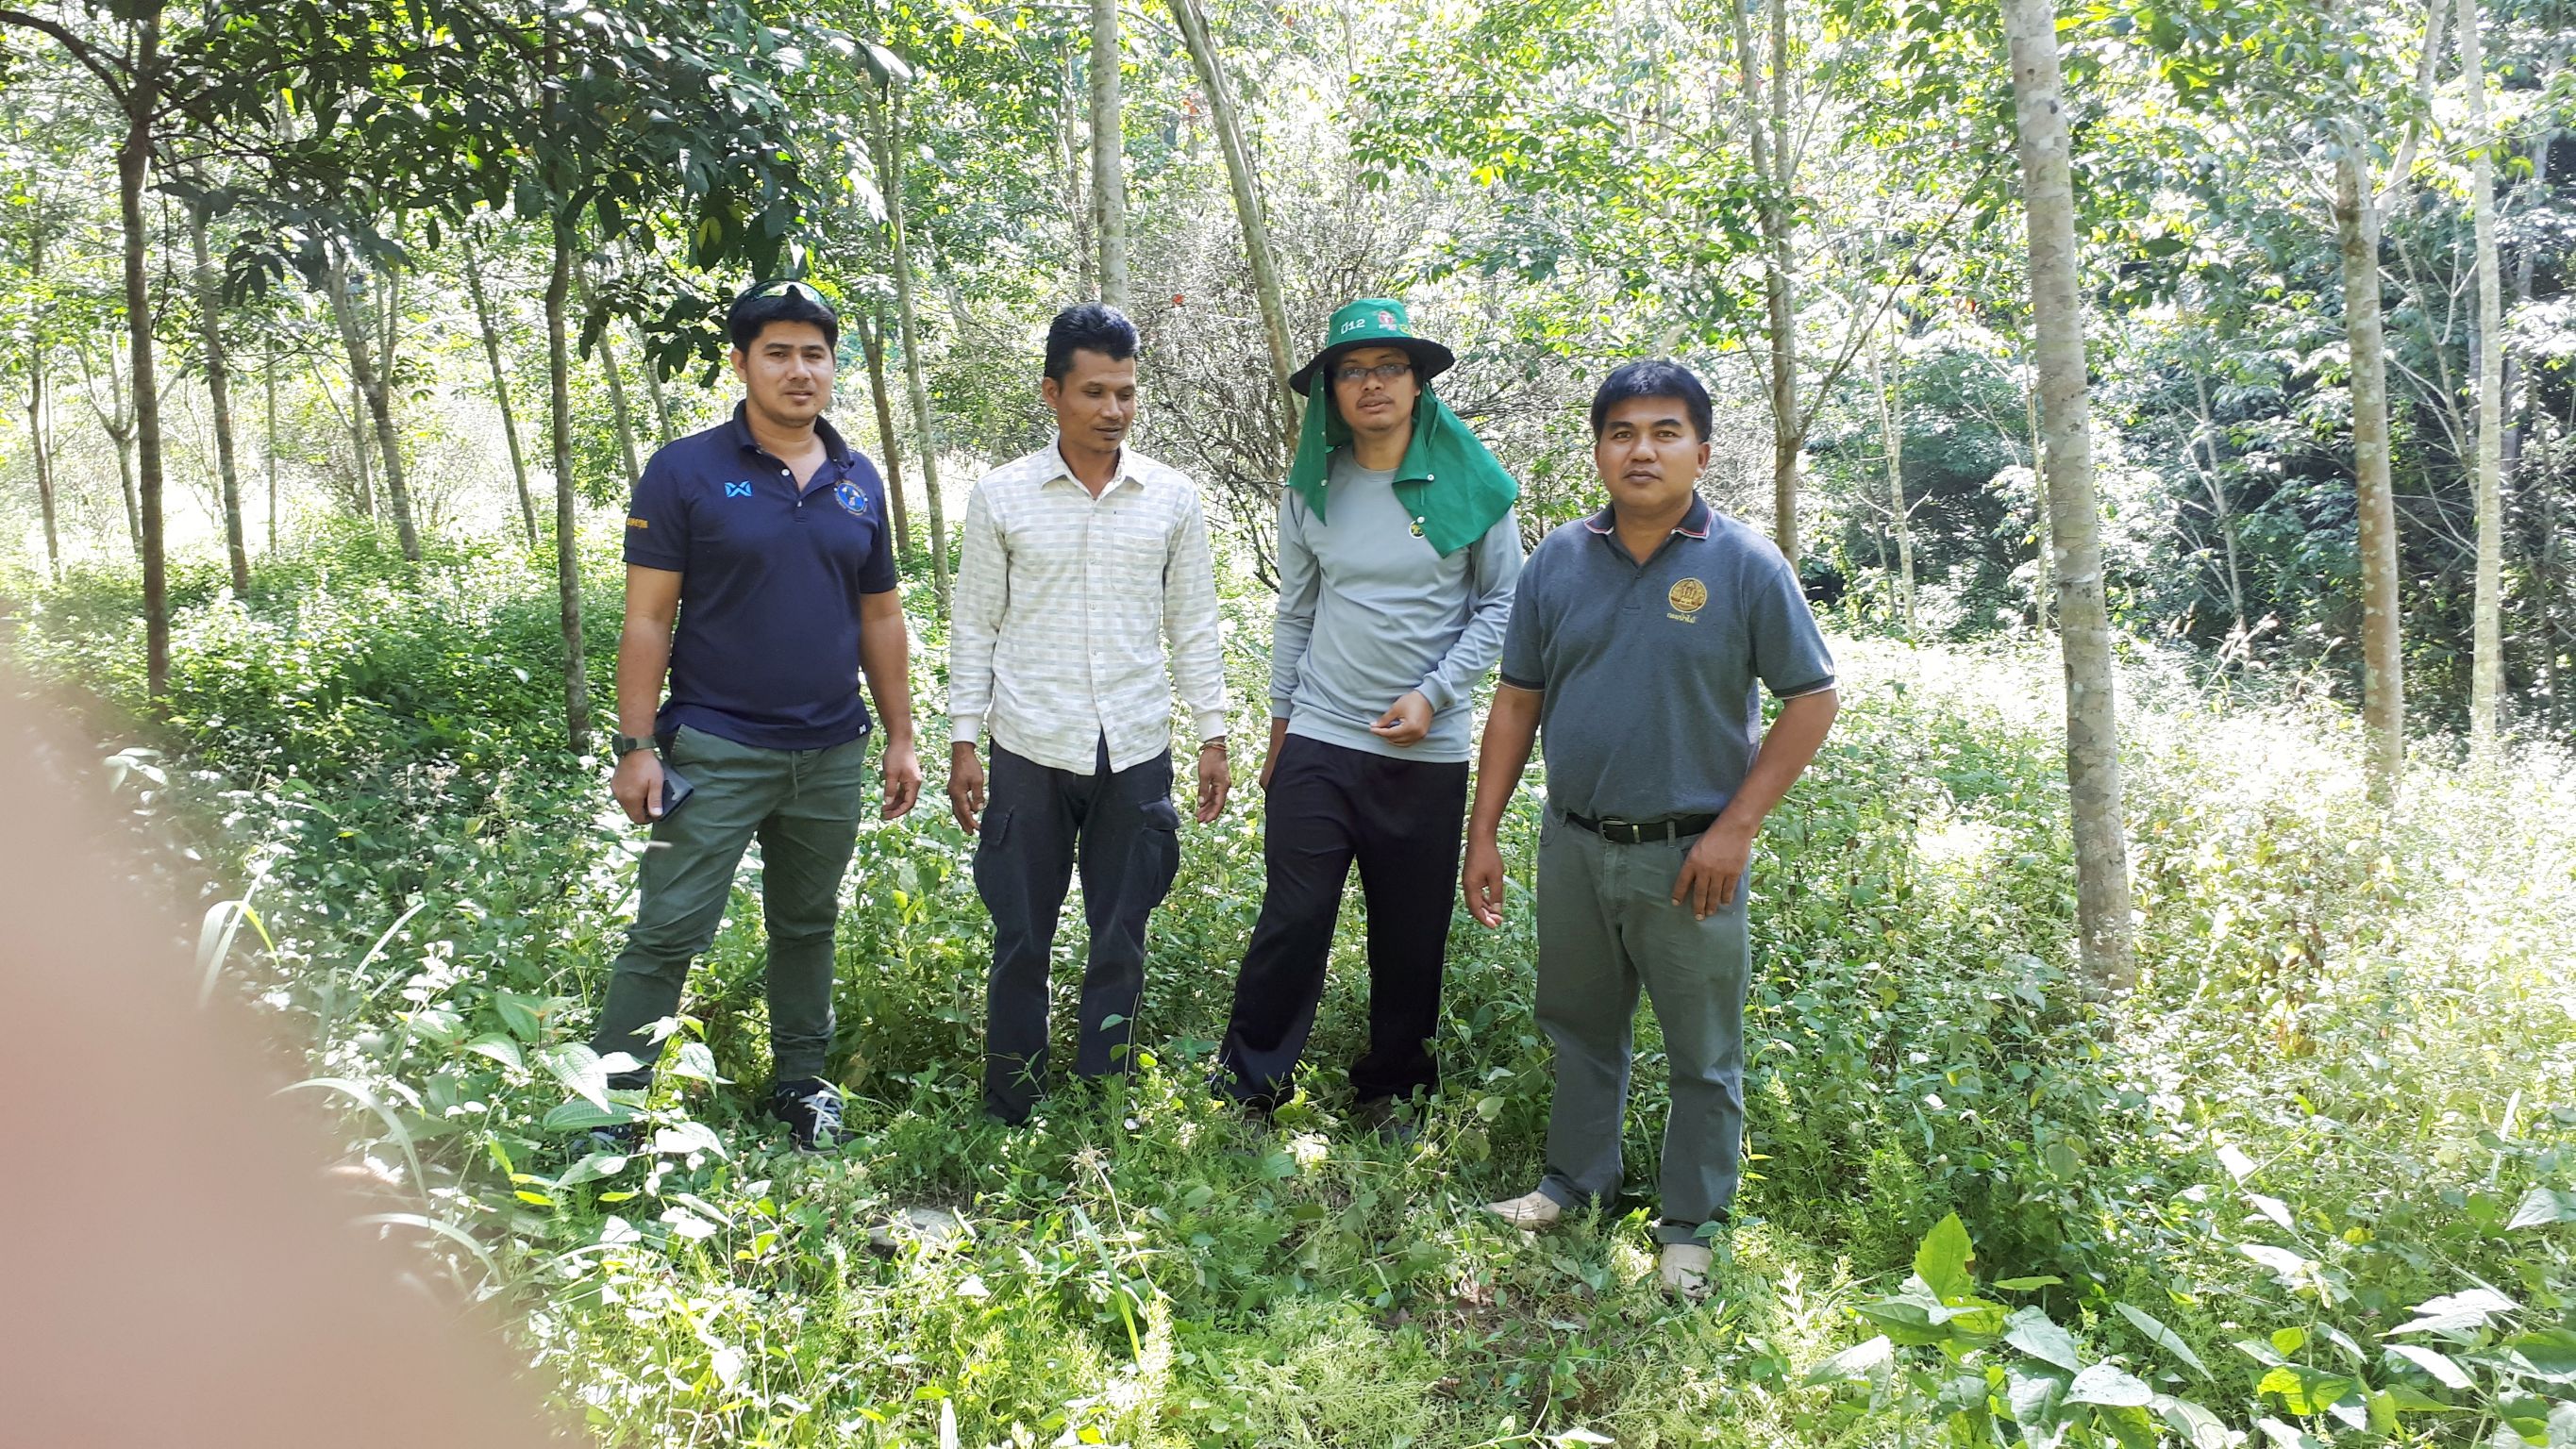 สำรวจรังวัดแปลงดิน อาสินที่ได้ทำประโยชน์แล้ว ในเขตป่าสงวนฯป่าเขาแดน ป่าควนเจดีย์ ฯ